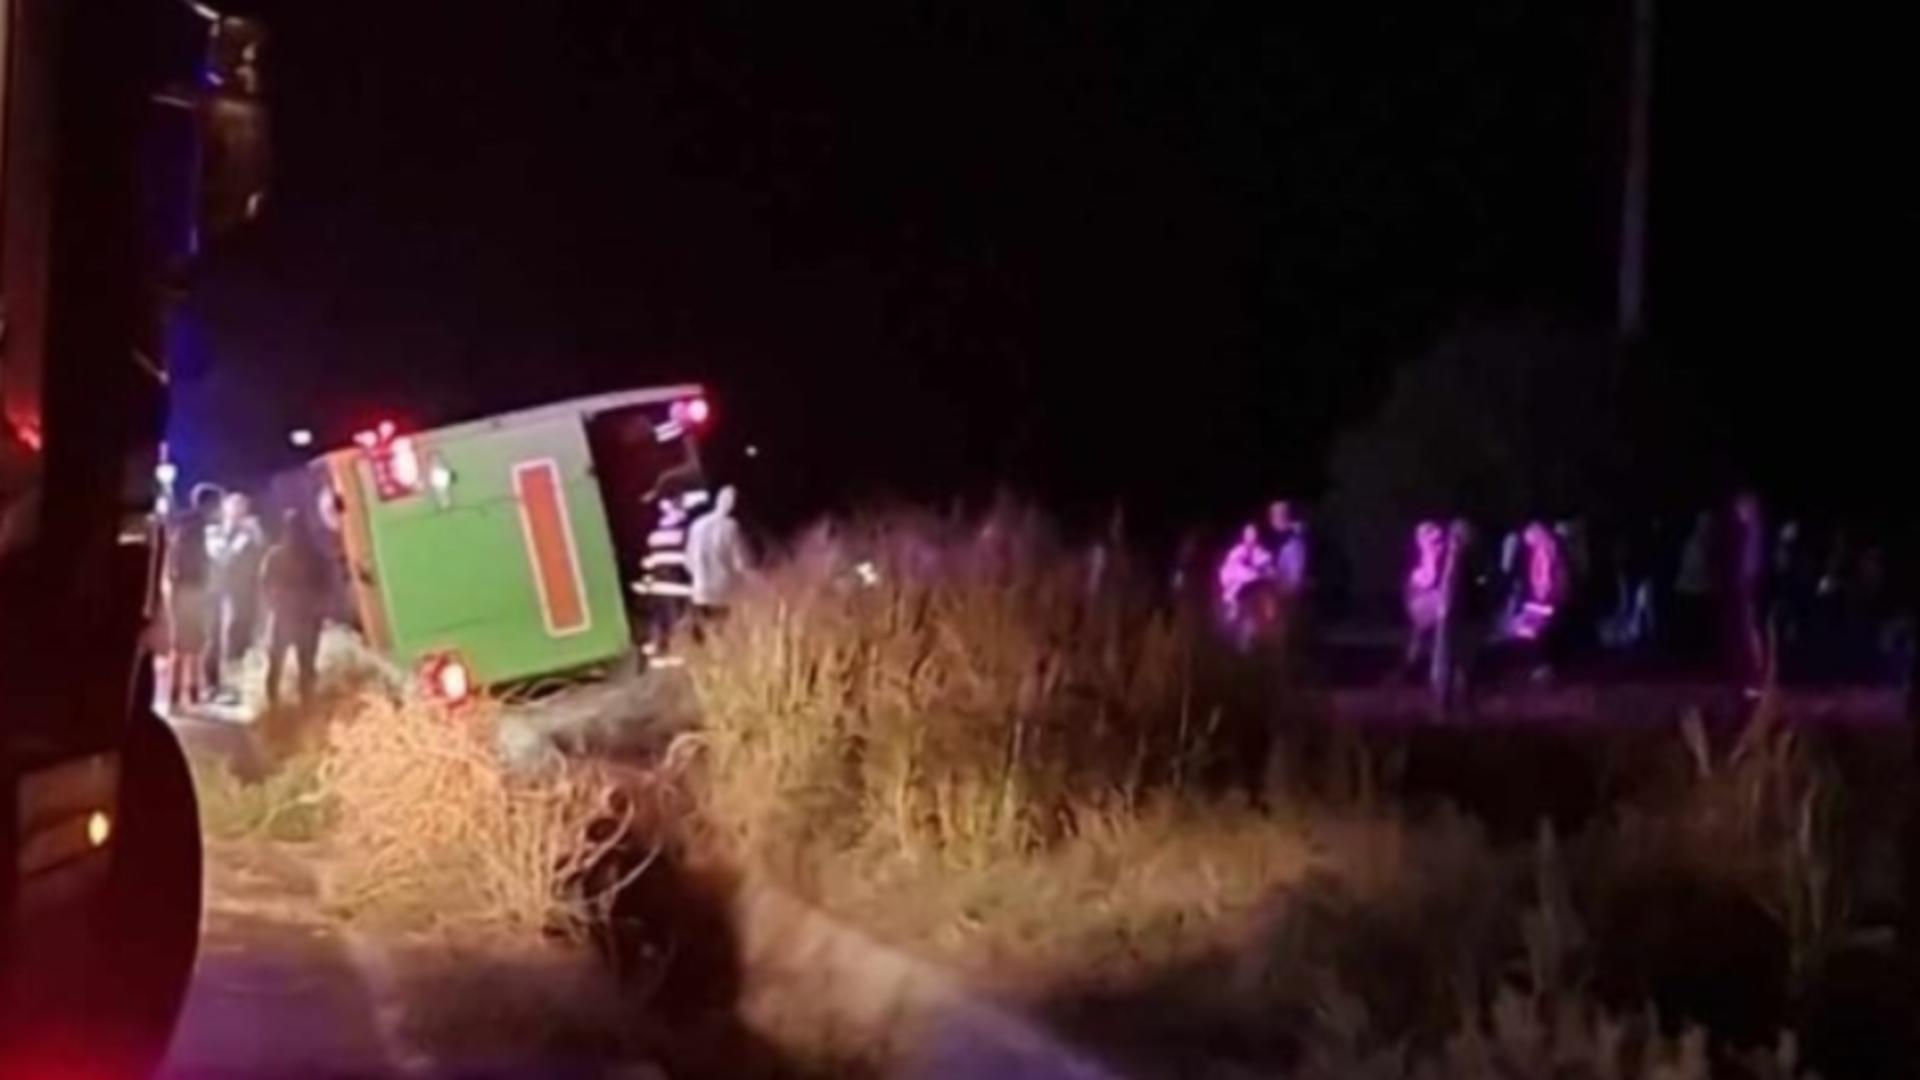 Situația pasagerilor din autocarul care s-a răsturnat, luni seara, la Hârșova: 7 persoane au ajuns la spital. Anunțul ISU Dobrogea